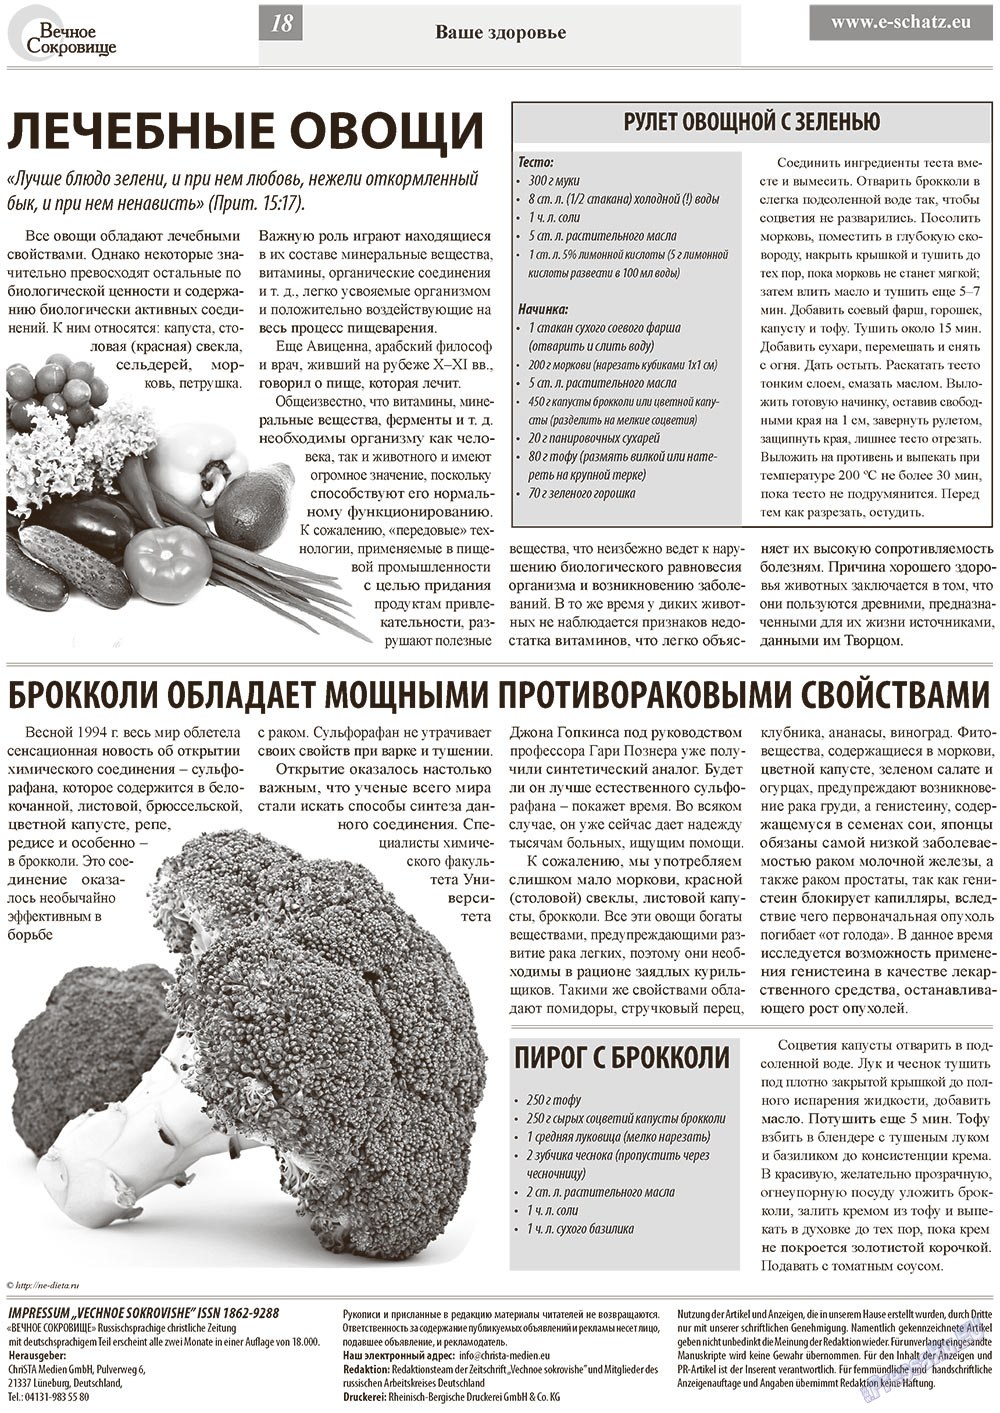 Вечное сокровище (газета). 2013 год, номер 1, стр. 18